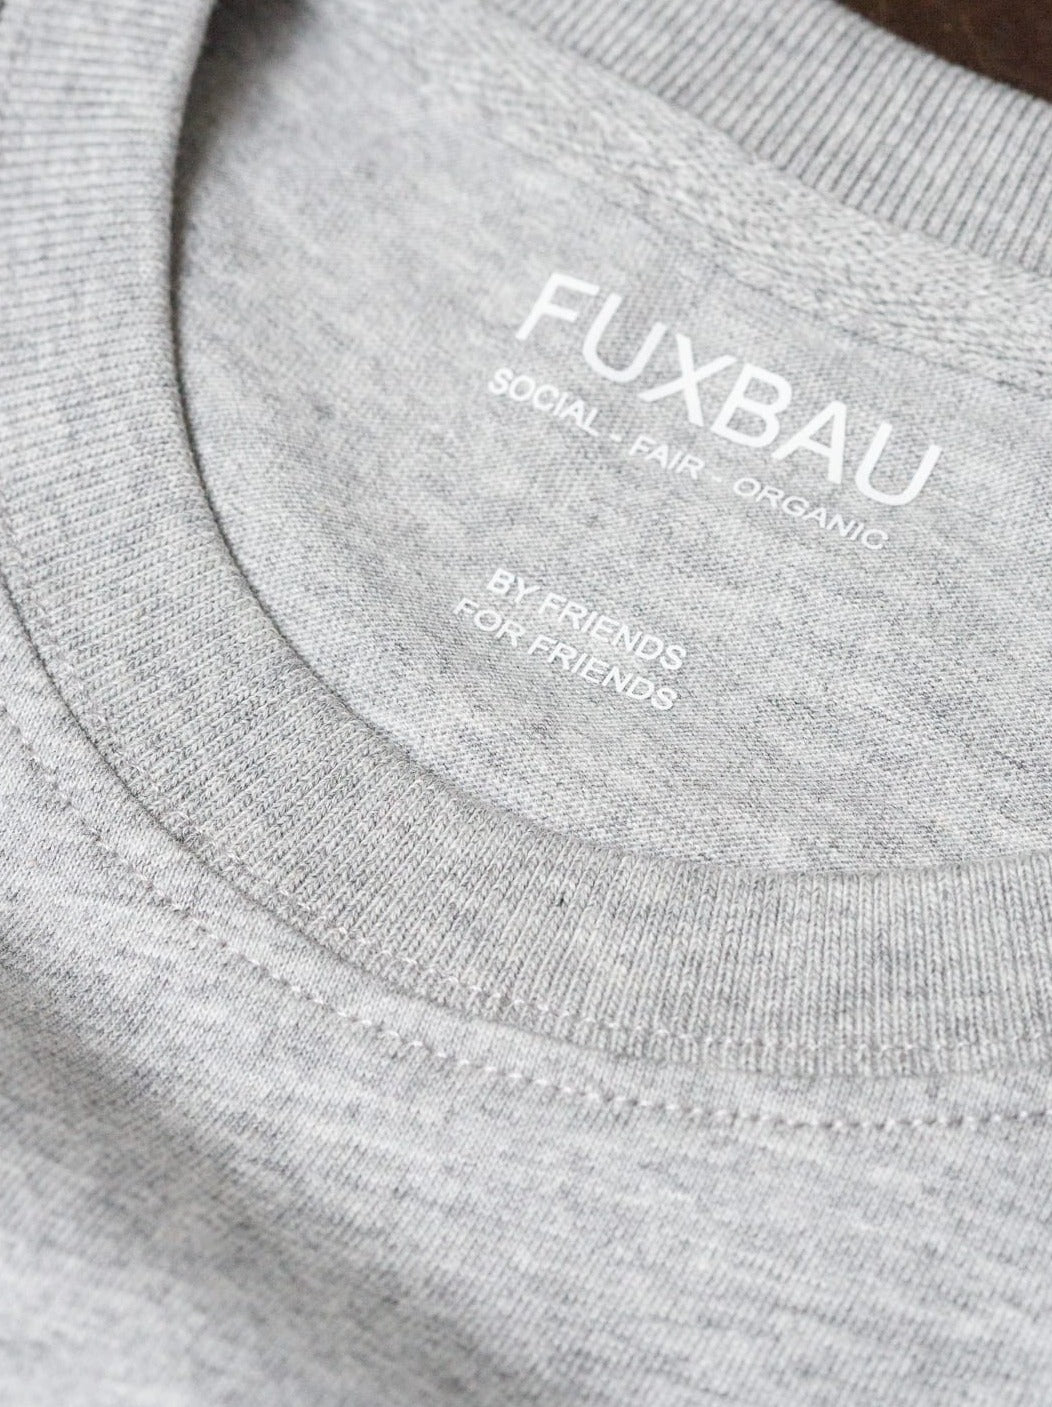 Imprint im grauen Basic T-shirt FUXBAU social - fair - organic